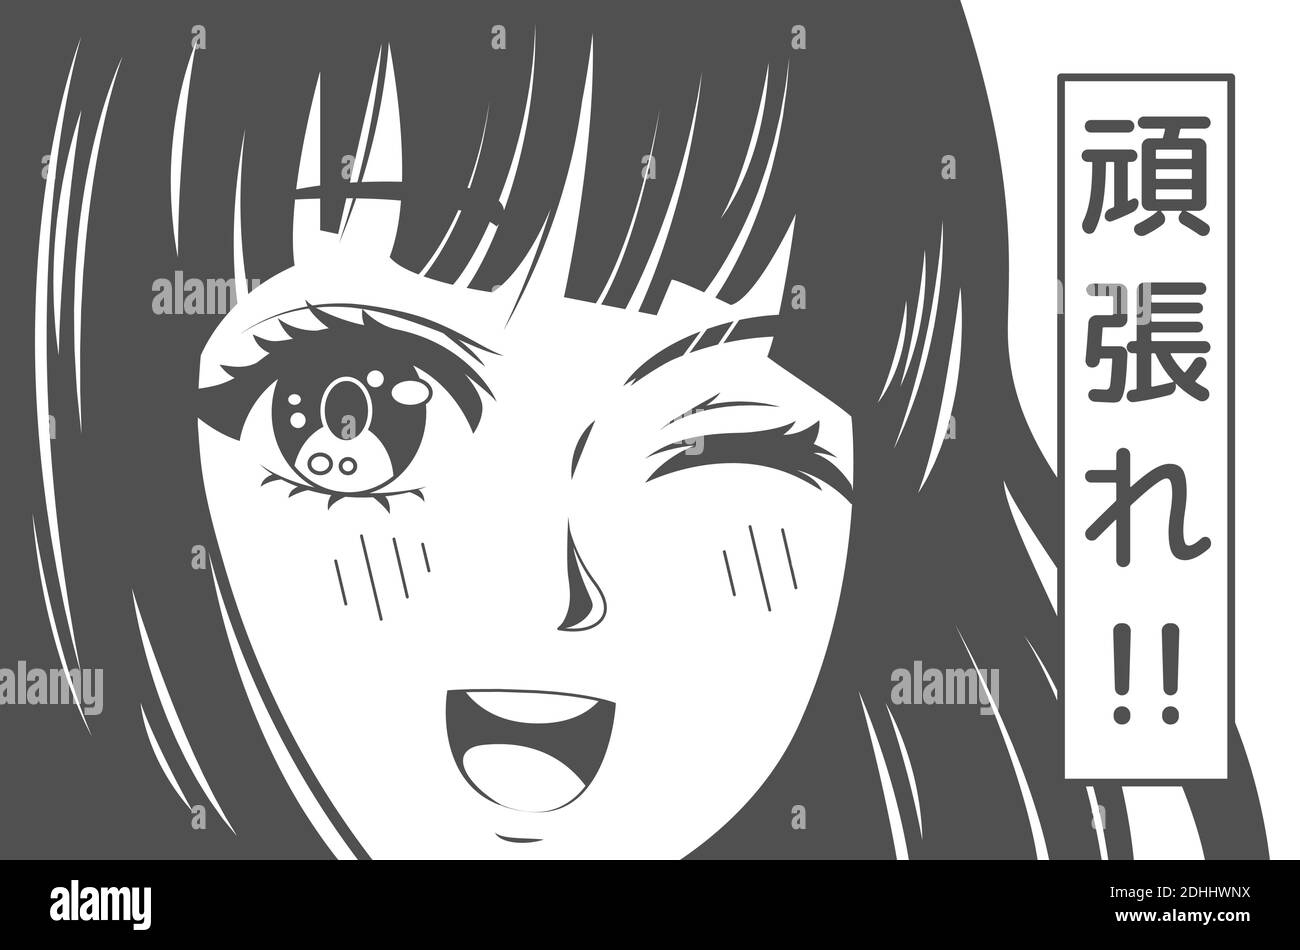 Poster ANIME. Kawaii winking scuola ragazza faccia con grandi occhi in stile manga e simboli giapponesi significa andare per esso. T-shirt japan stampa vettoriale Illustrazione Vettoriale